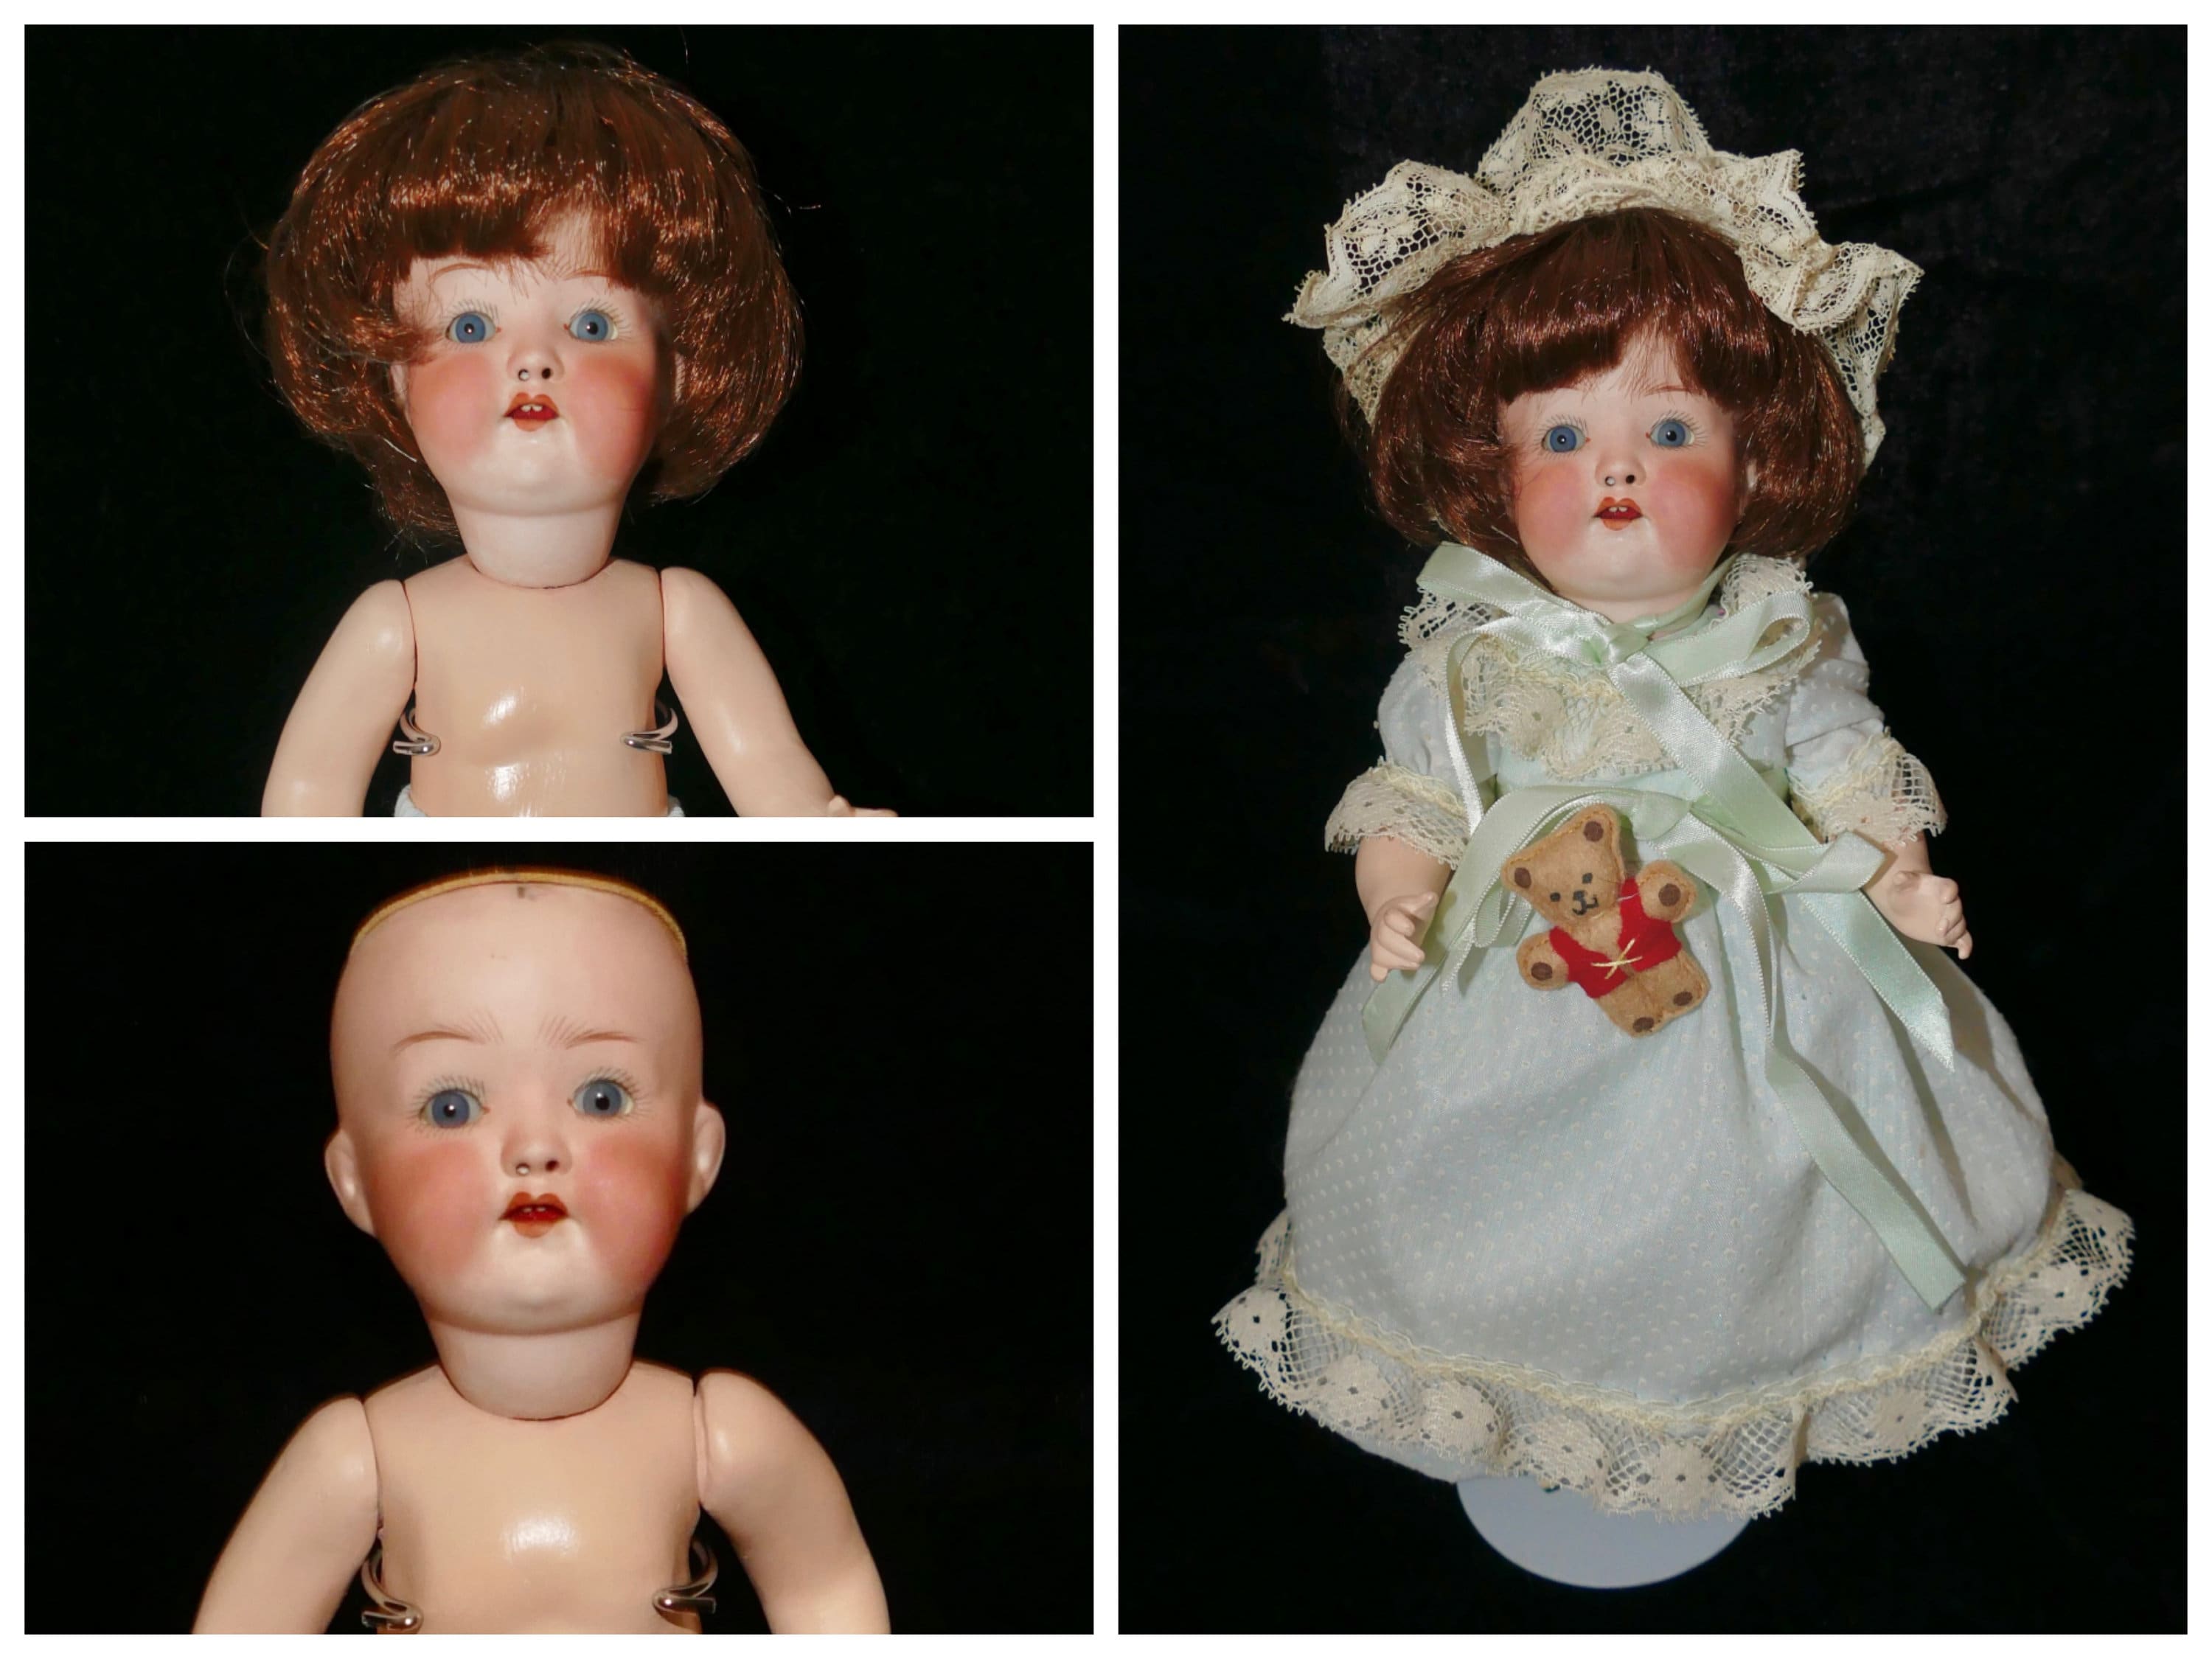 Antique Hertel Schwab 152 Baby, 15 IN, Antique German Bisque Doll Antique  Wig